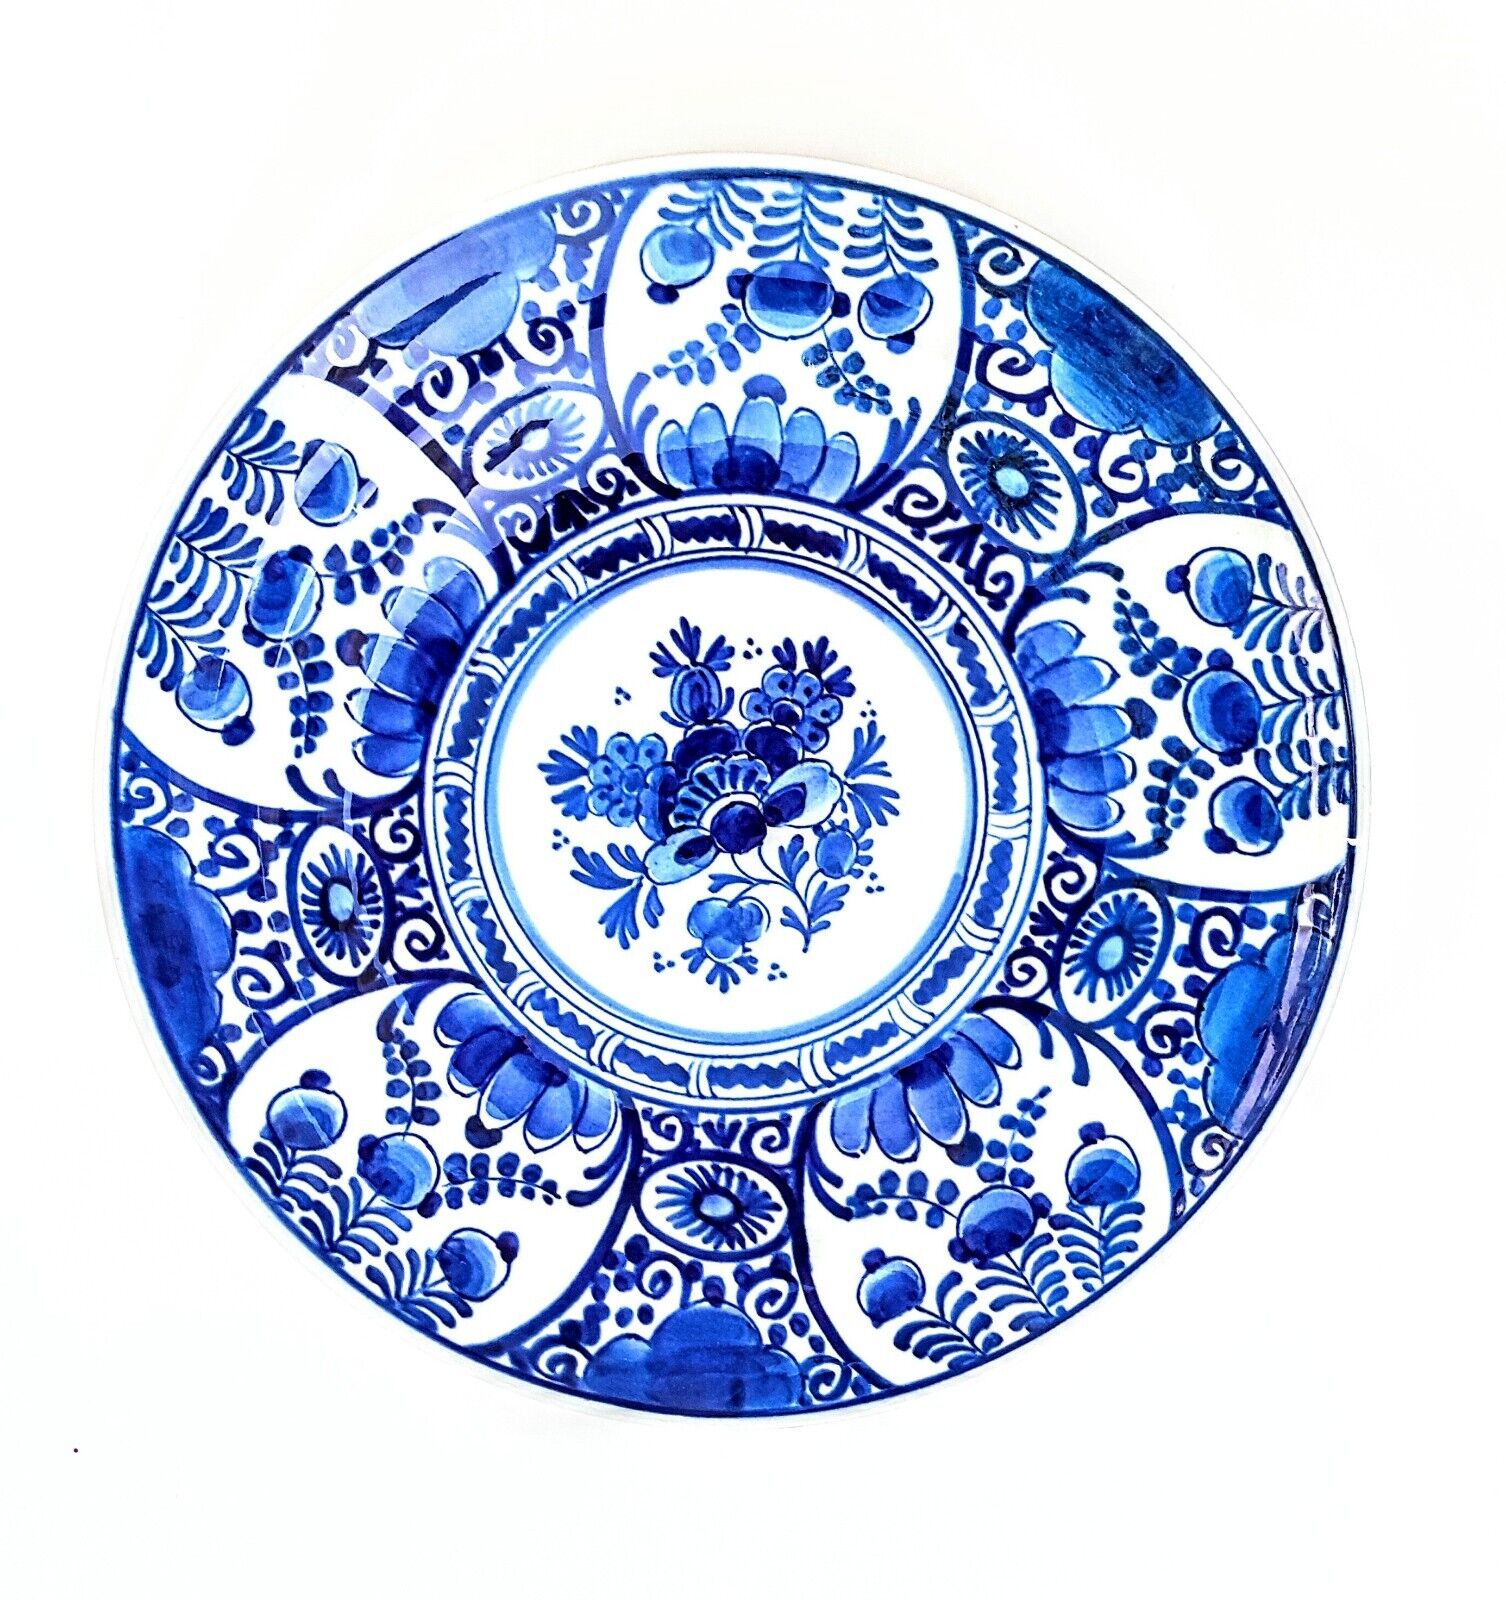 1961 Royal Delft Dutch Floral Plate Blue White Handpainted Art MCM Floral